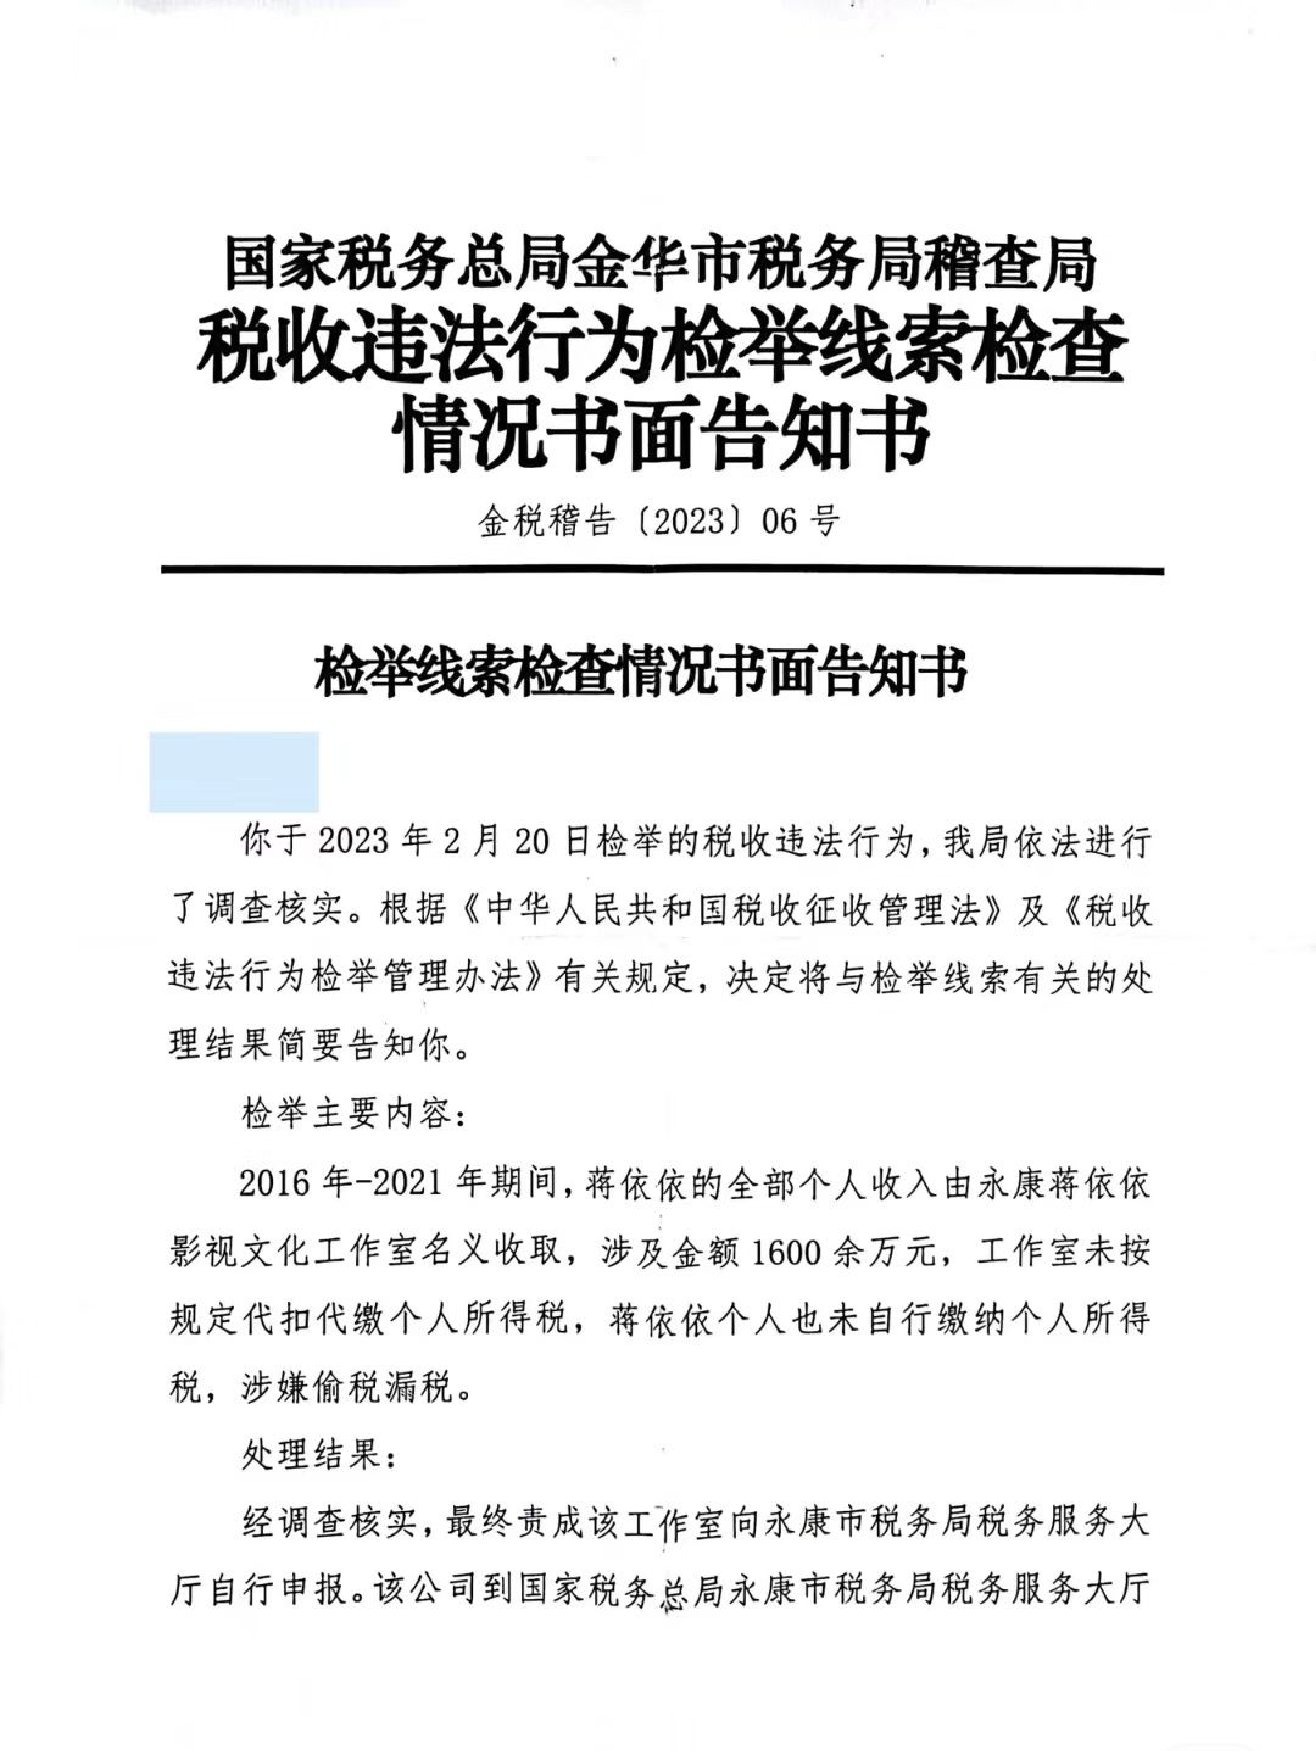 蒋依依被举报偷税漏税 税务局已责成补缴税款238万余元